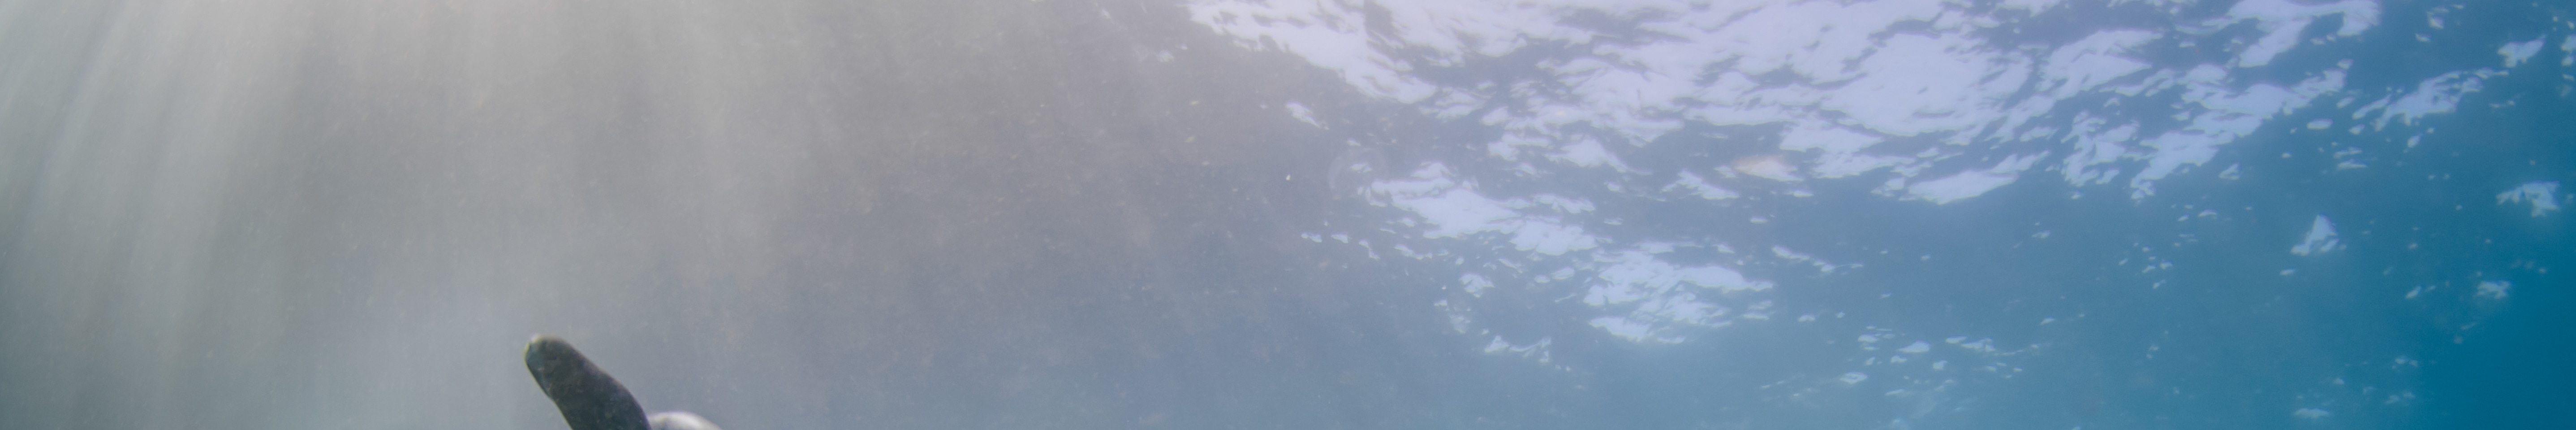 潛水和喜悅：藍夢島的三個有趣的潛水與PADI5* 中心